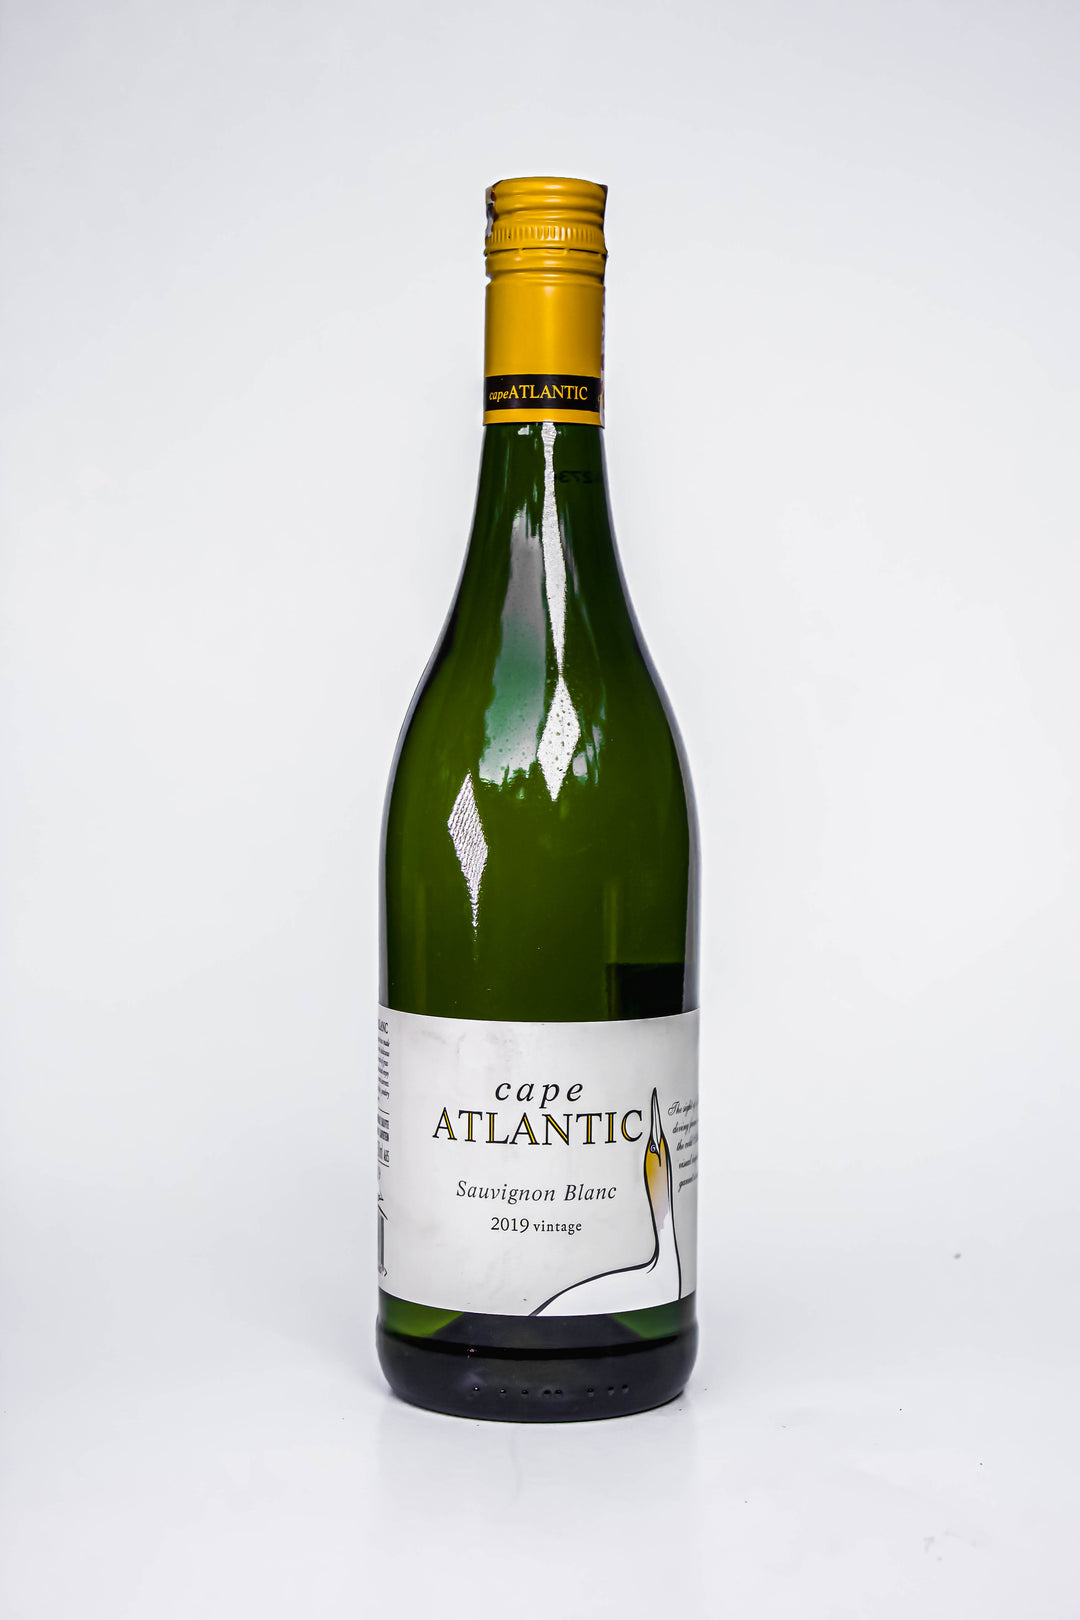 Cape Atlantic Sauvignon Blanc